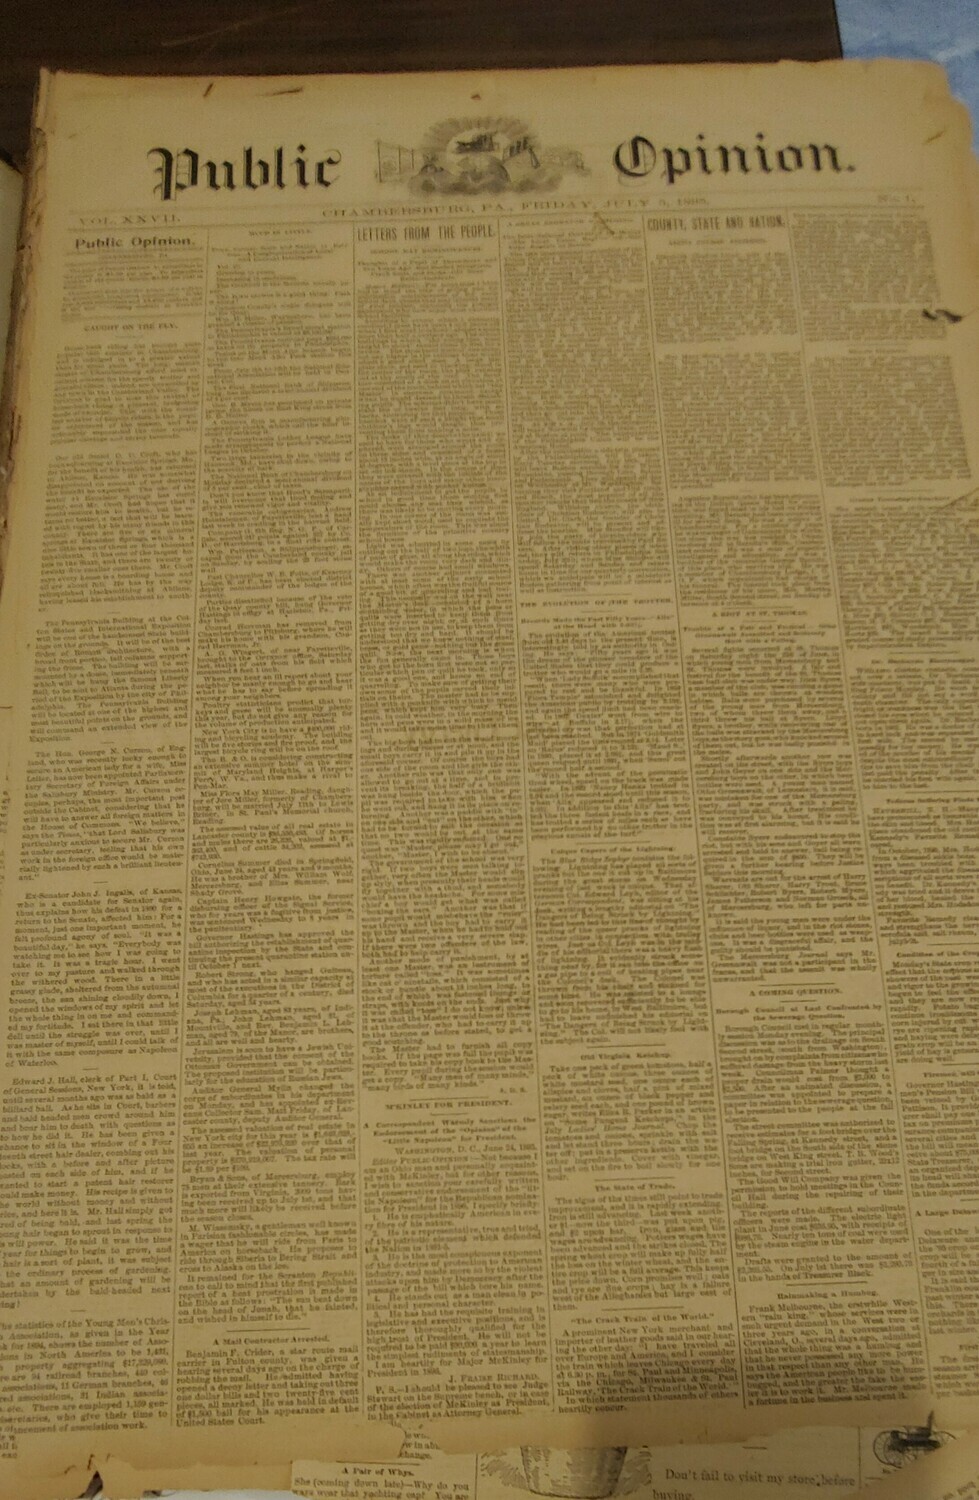 Public Opinion 1895-1896